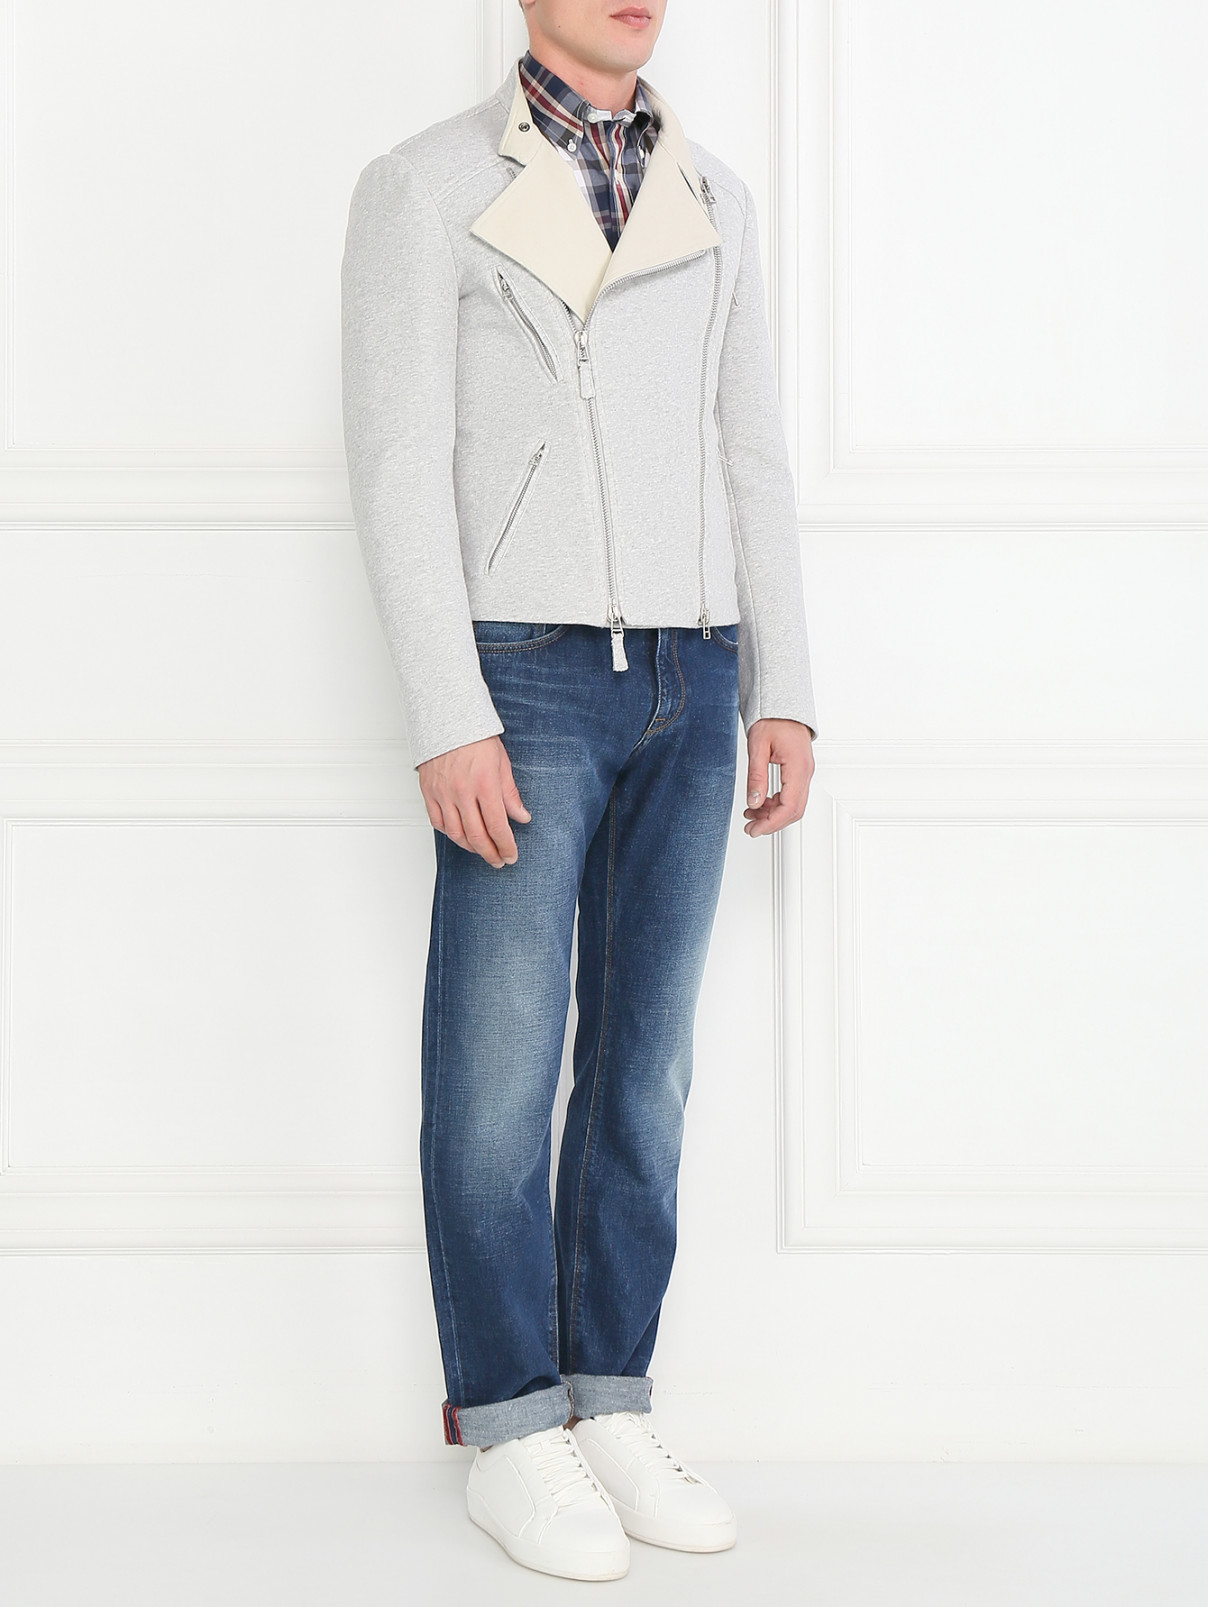 Куртка-косуха из хлопка Ermanno Scervino  –  Модель Общий вид  – Цвет:  Серый